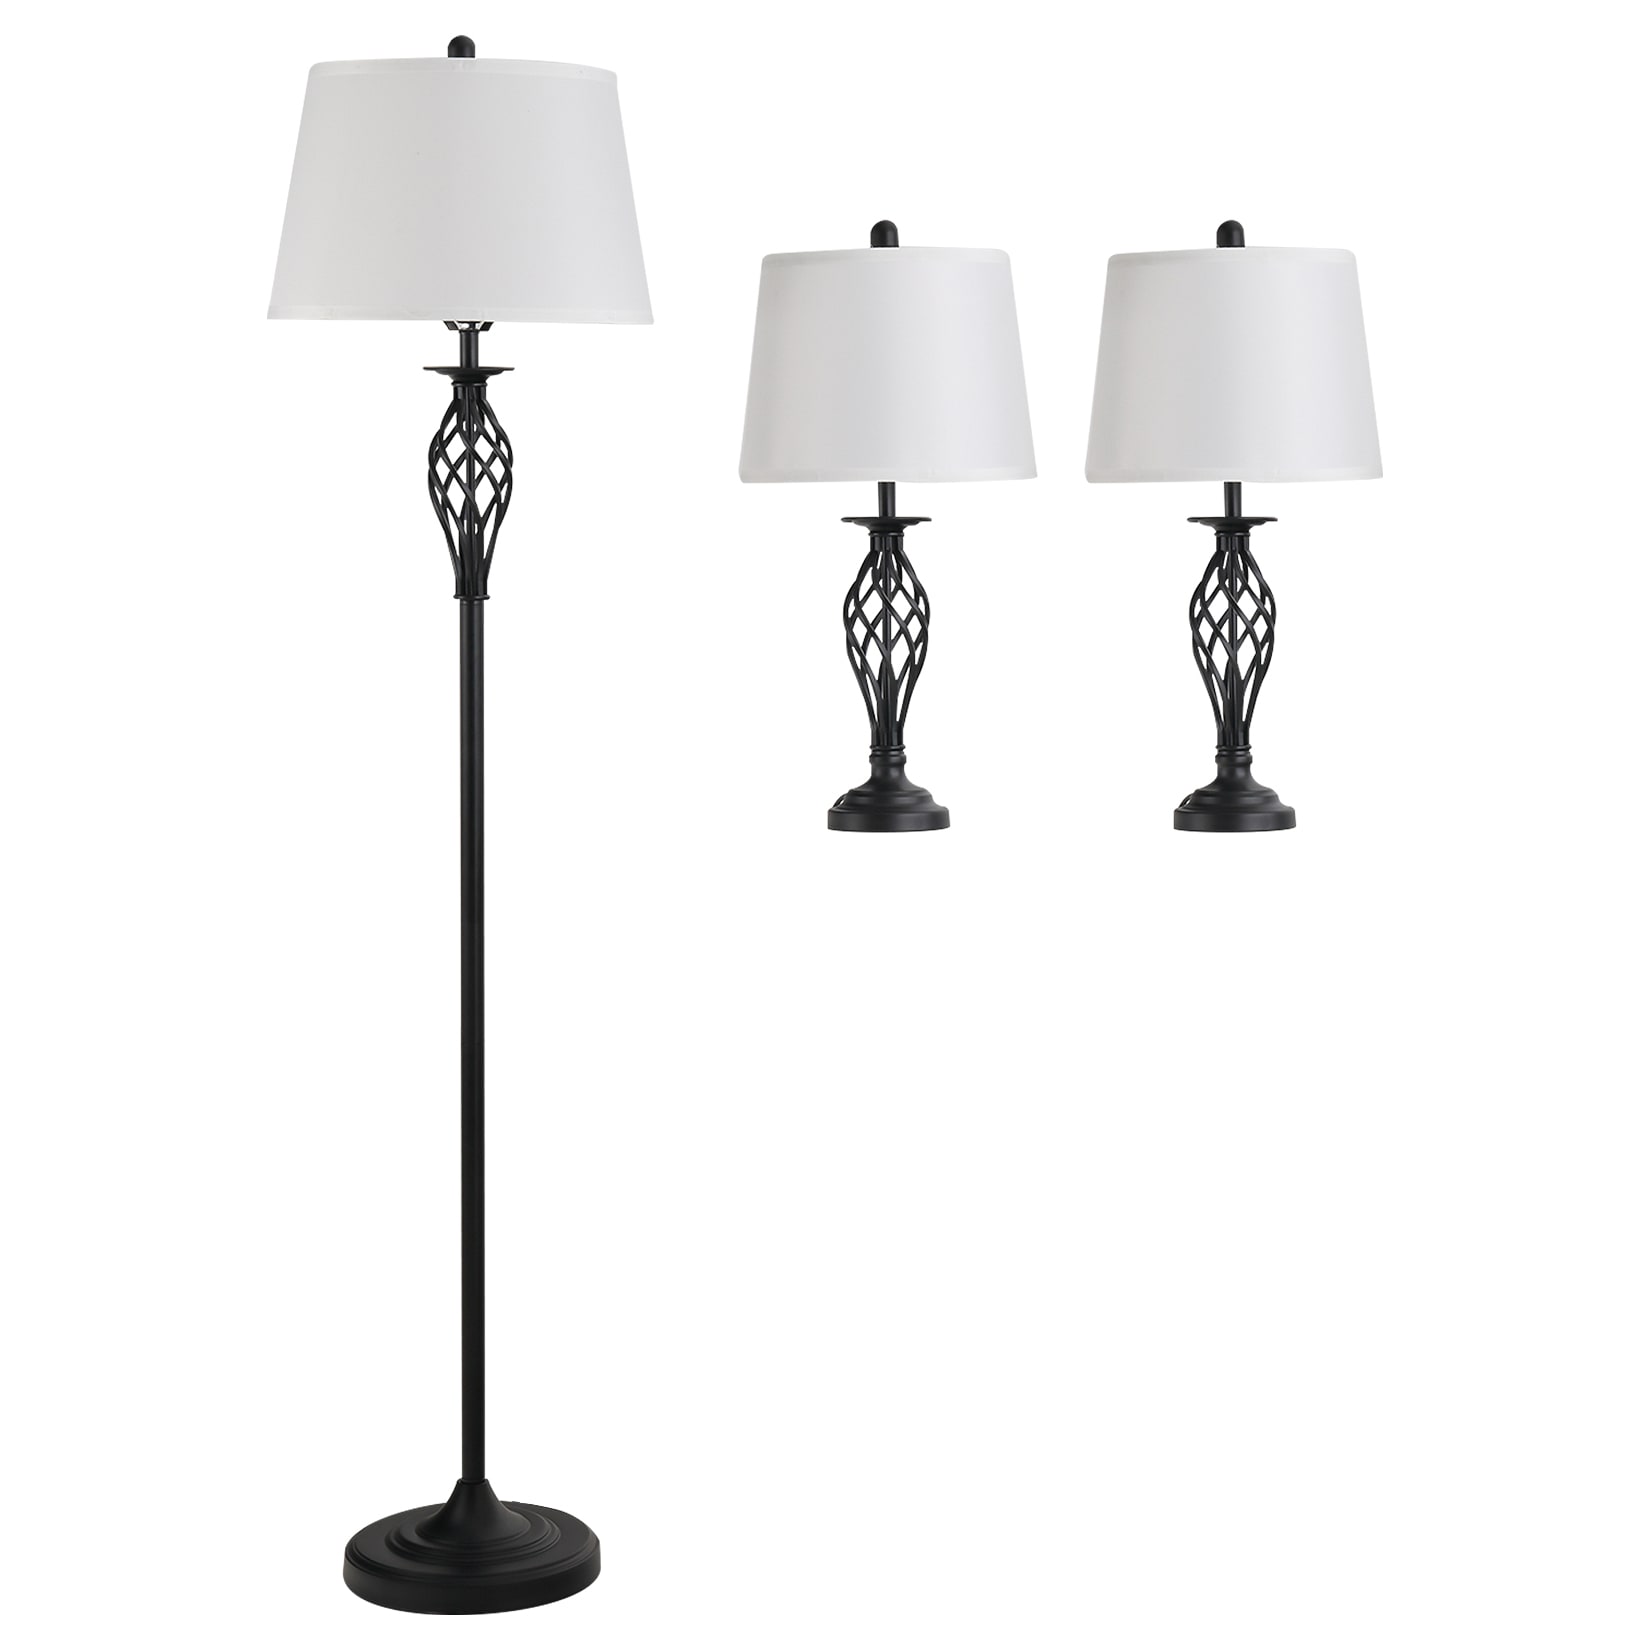 HOMCOM Stehlampe inkl. 2 Tischlampen schwarz, weiß 3er-Lampenset  Stehleuchte Nachttischlampe Leselampe kaufen bei